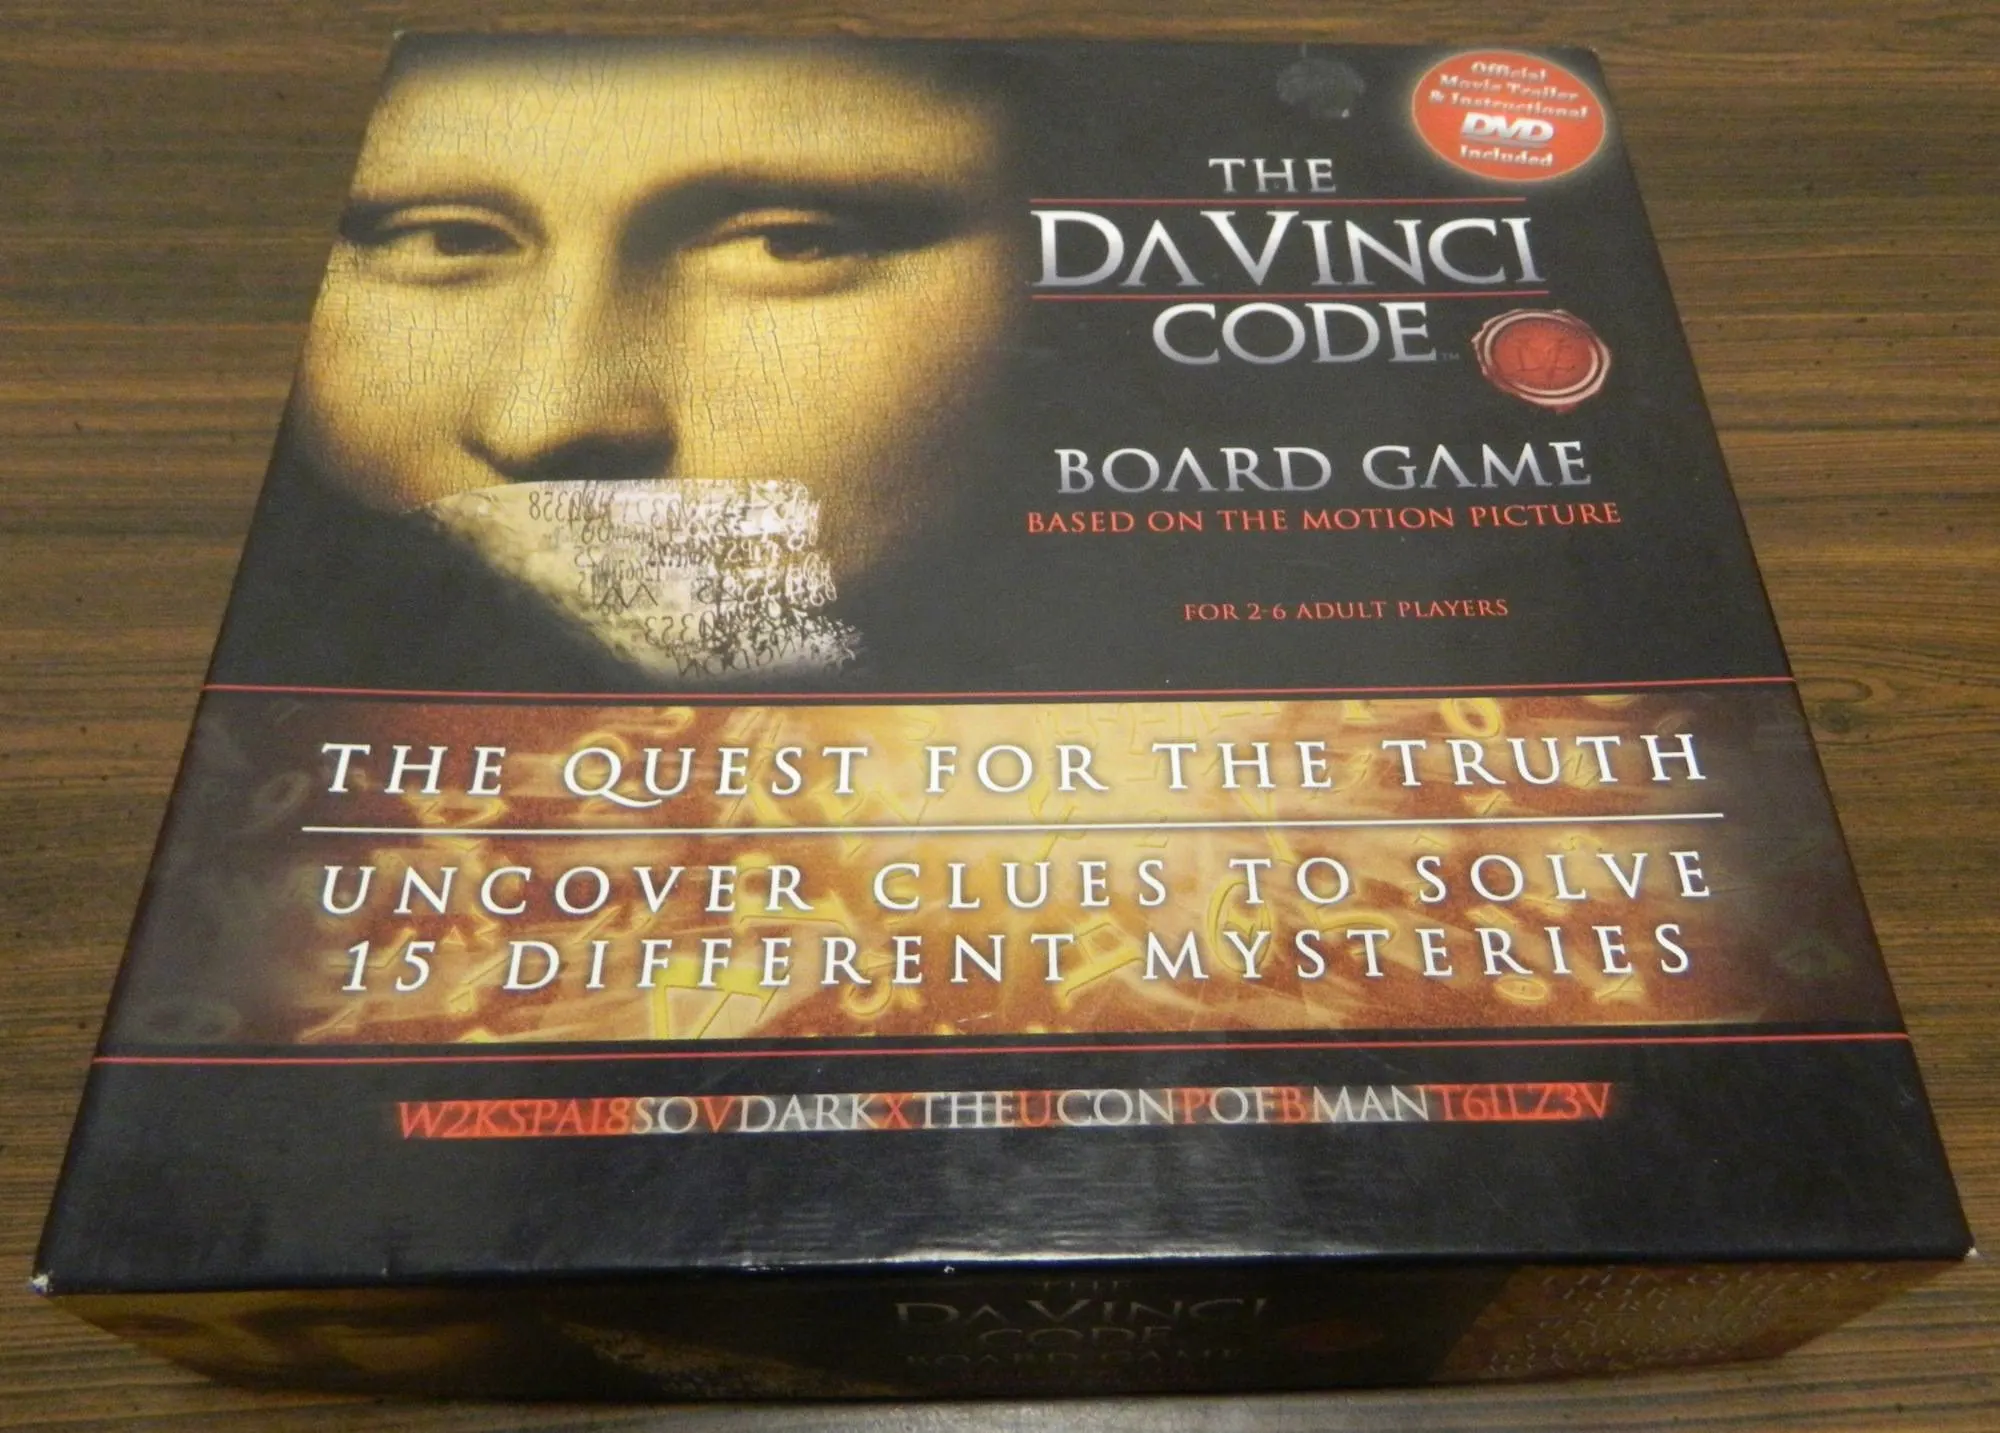 Box for The Da Vinci Code Board Game